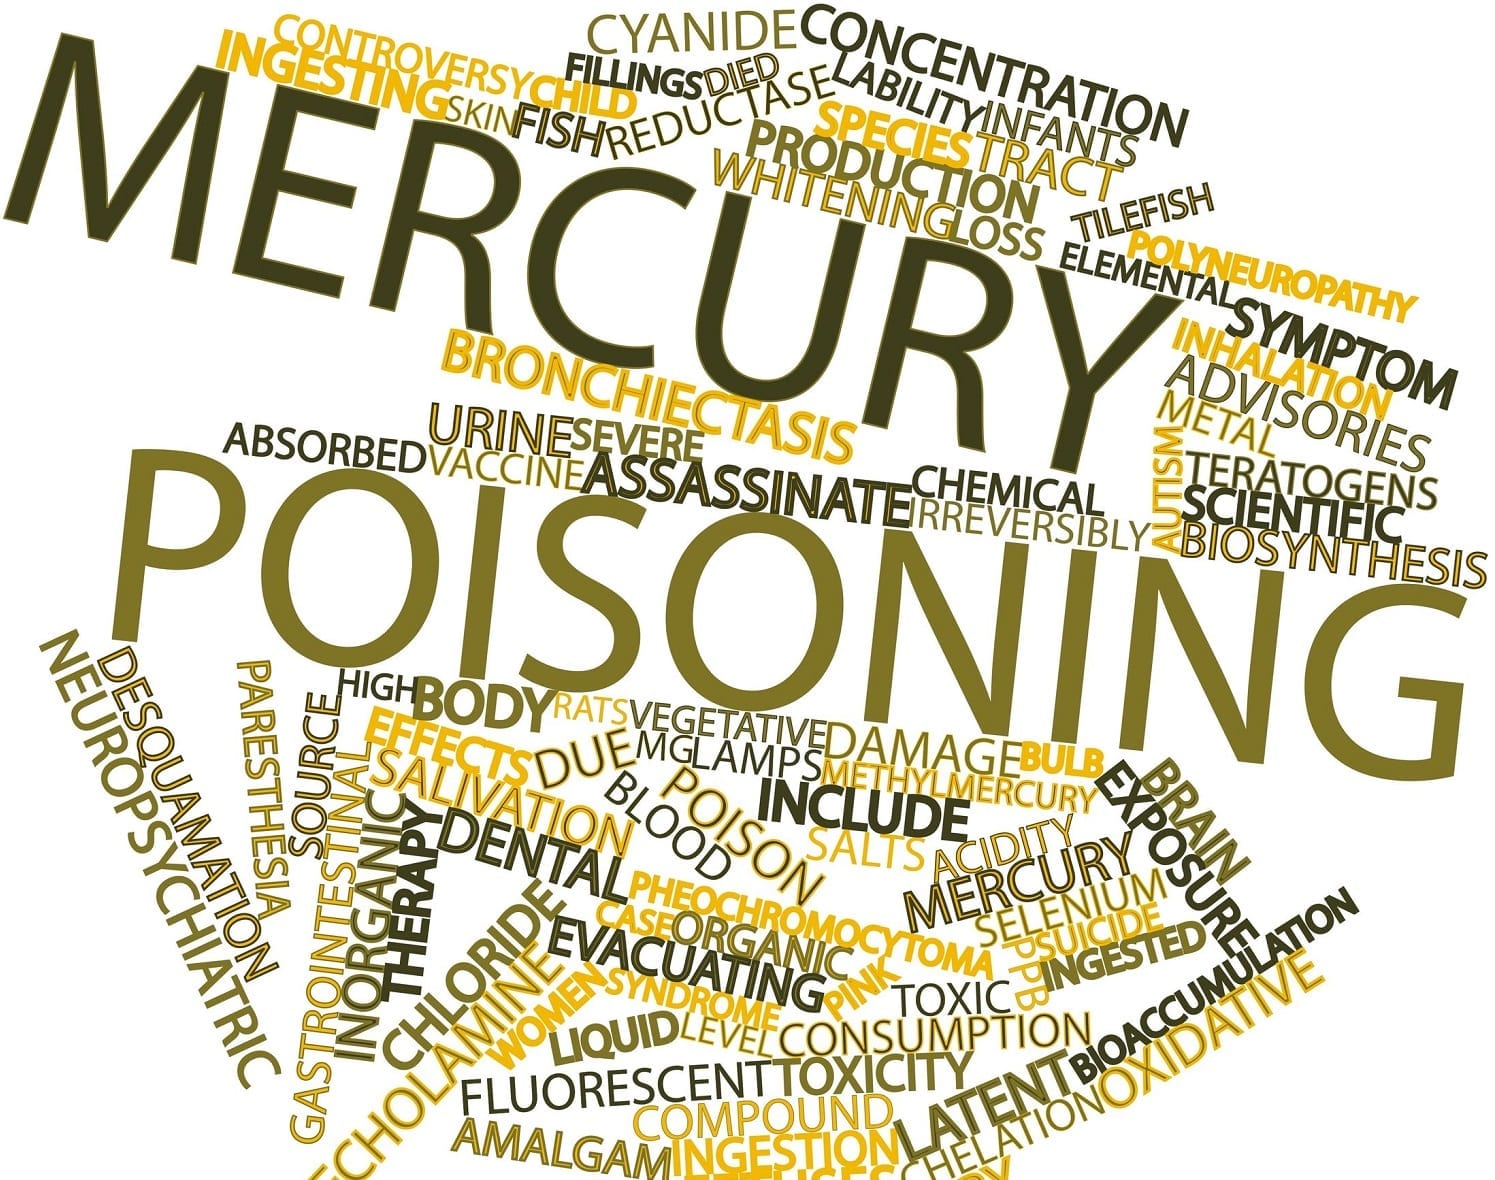 history of mercury poisoning